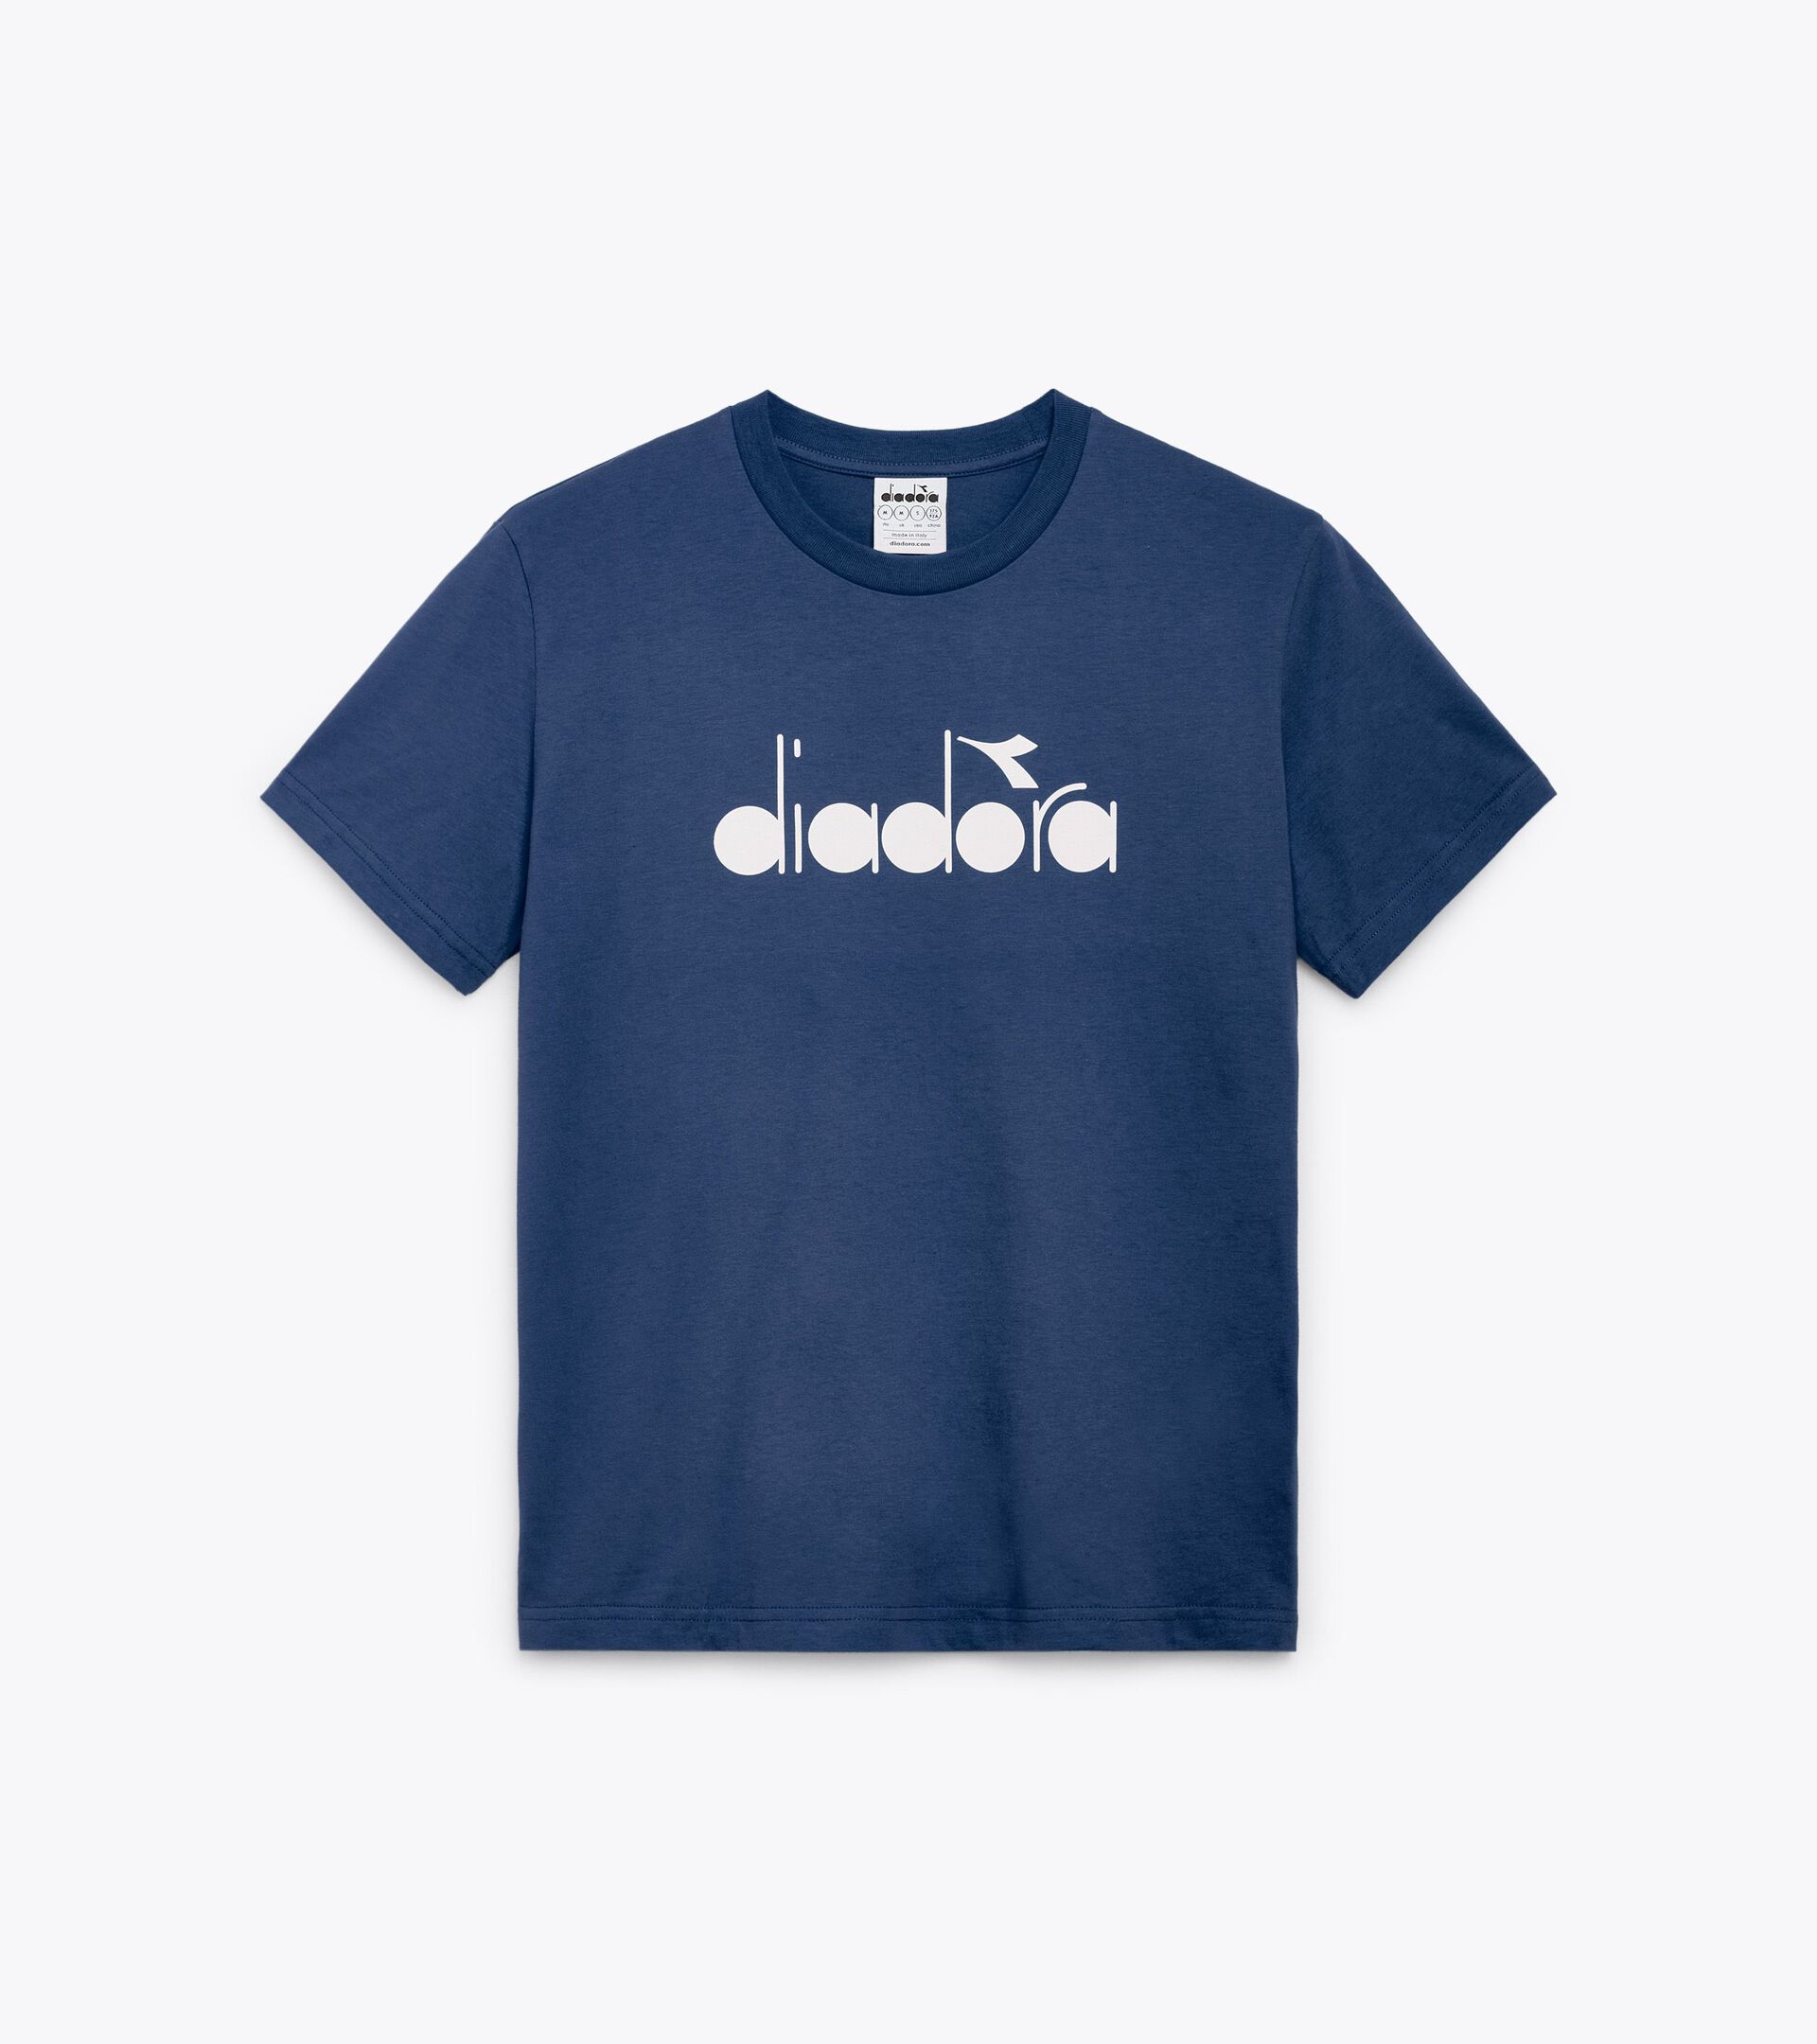 T-shirt - Made in Italy - Gender Neutral T-SHIRT SS LOGO OCEANA - Diadora